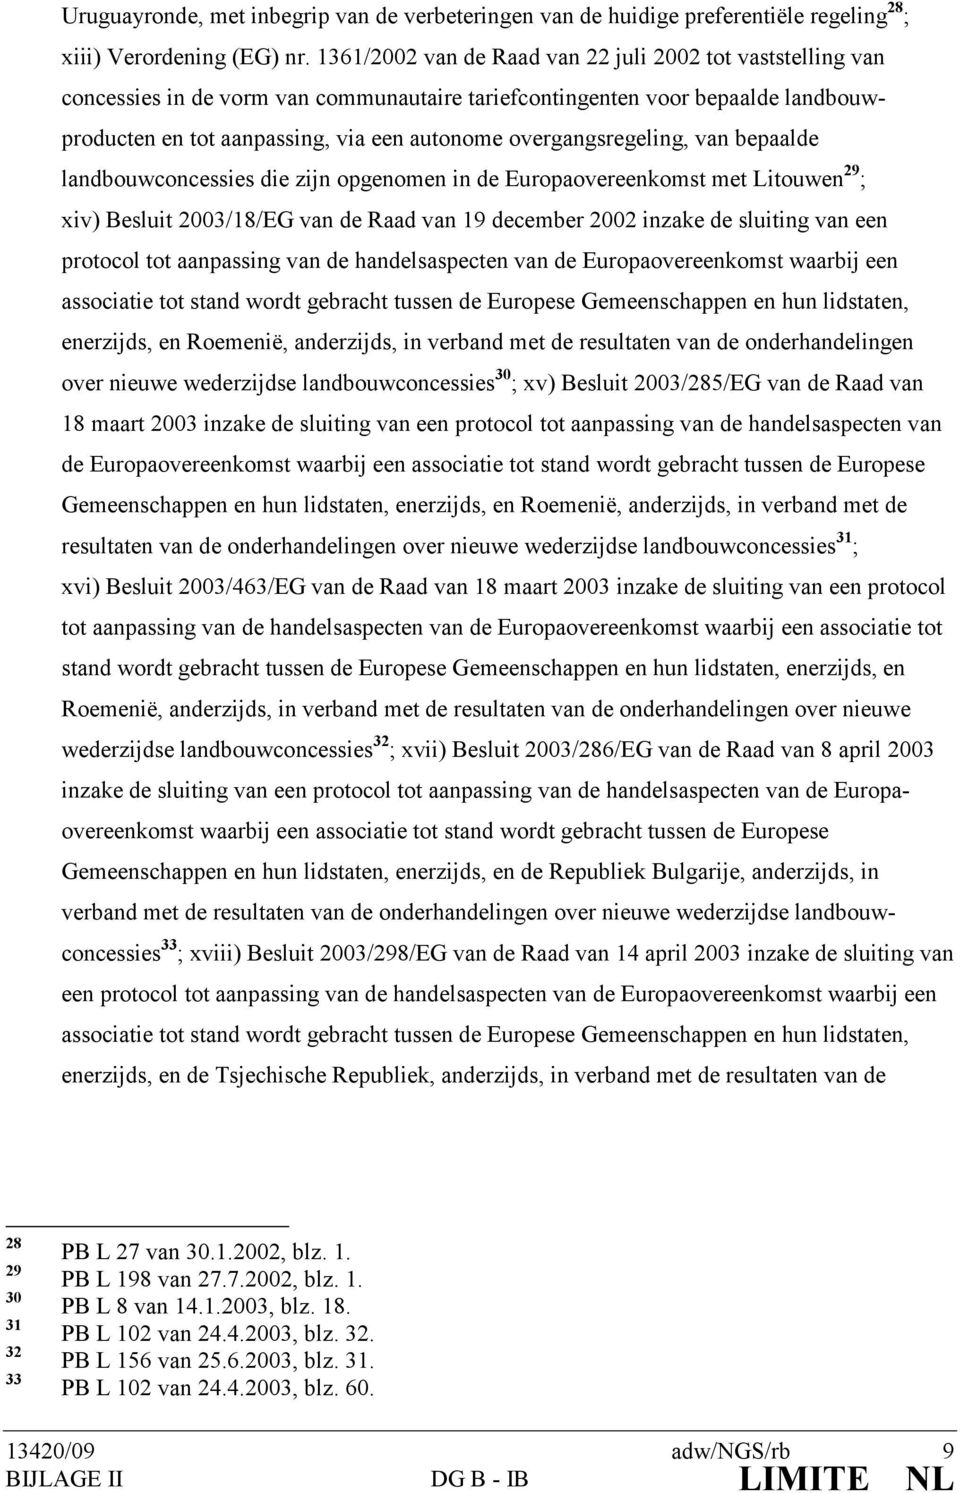 overgangsregeling, van bepaalde landbouwconcessies die zijn opgenomen in de Europaovereenkomst met Litouwen 29 ; xiv) Besluit 2003/18/EG van de Raad van 19 december 2002 inzake de sluiting van een